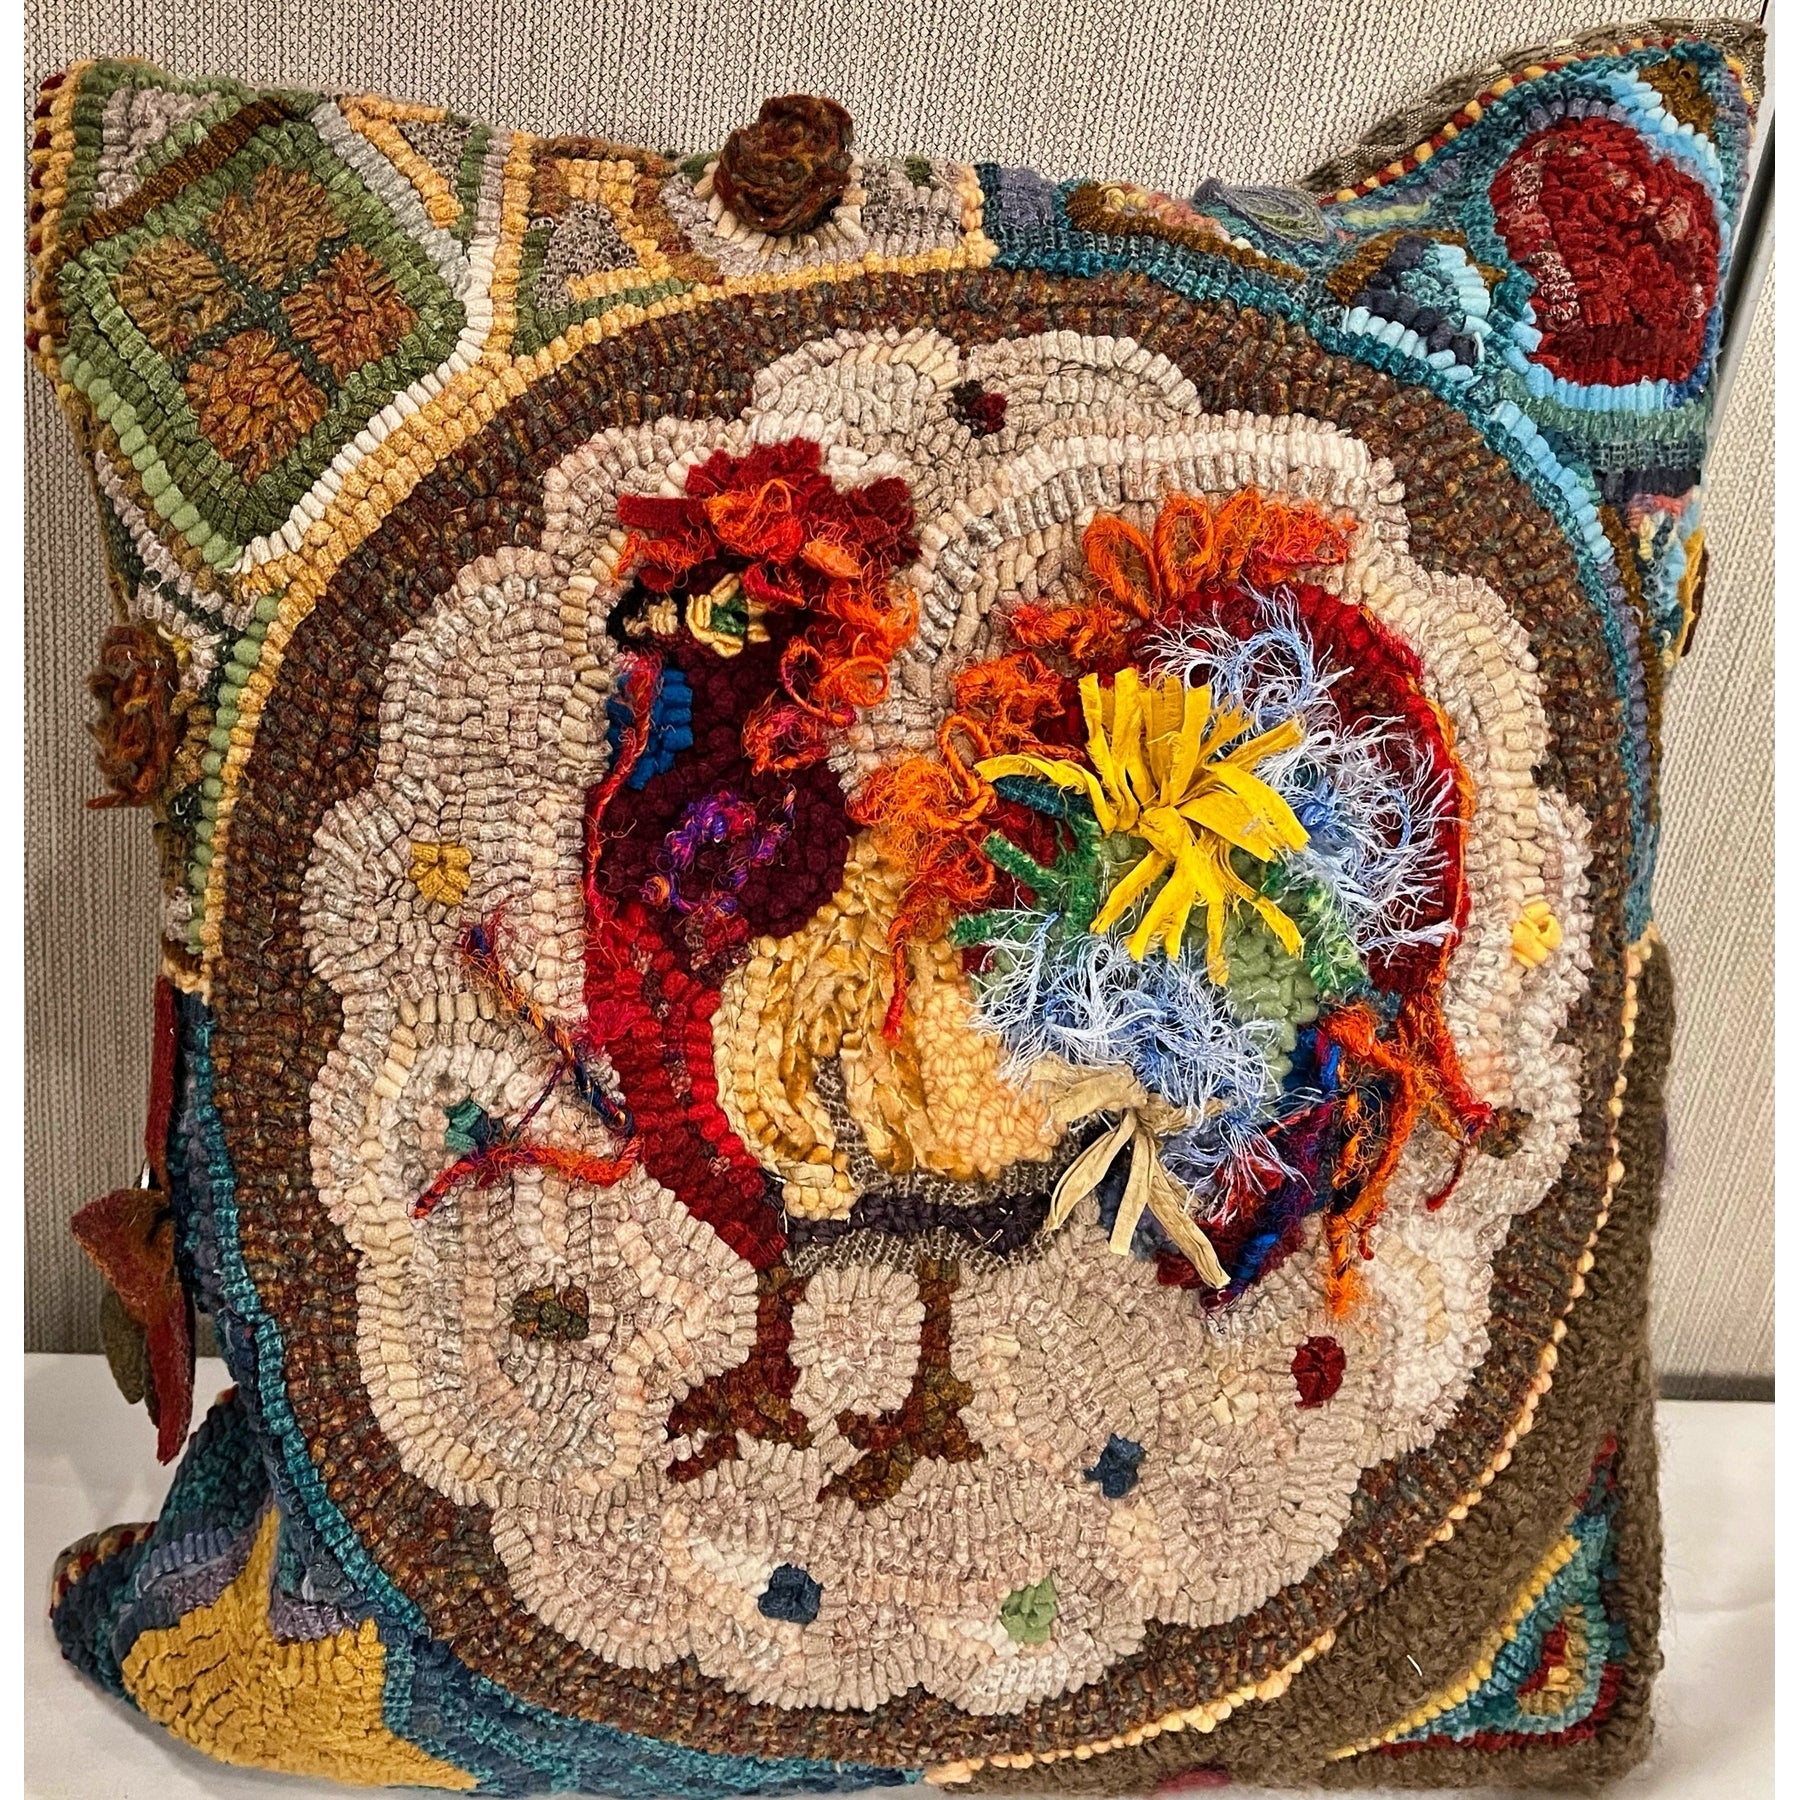 Rooster, rug hooked by Leslie Gurtler